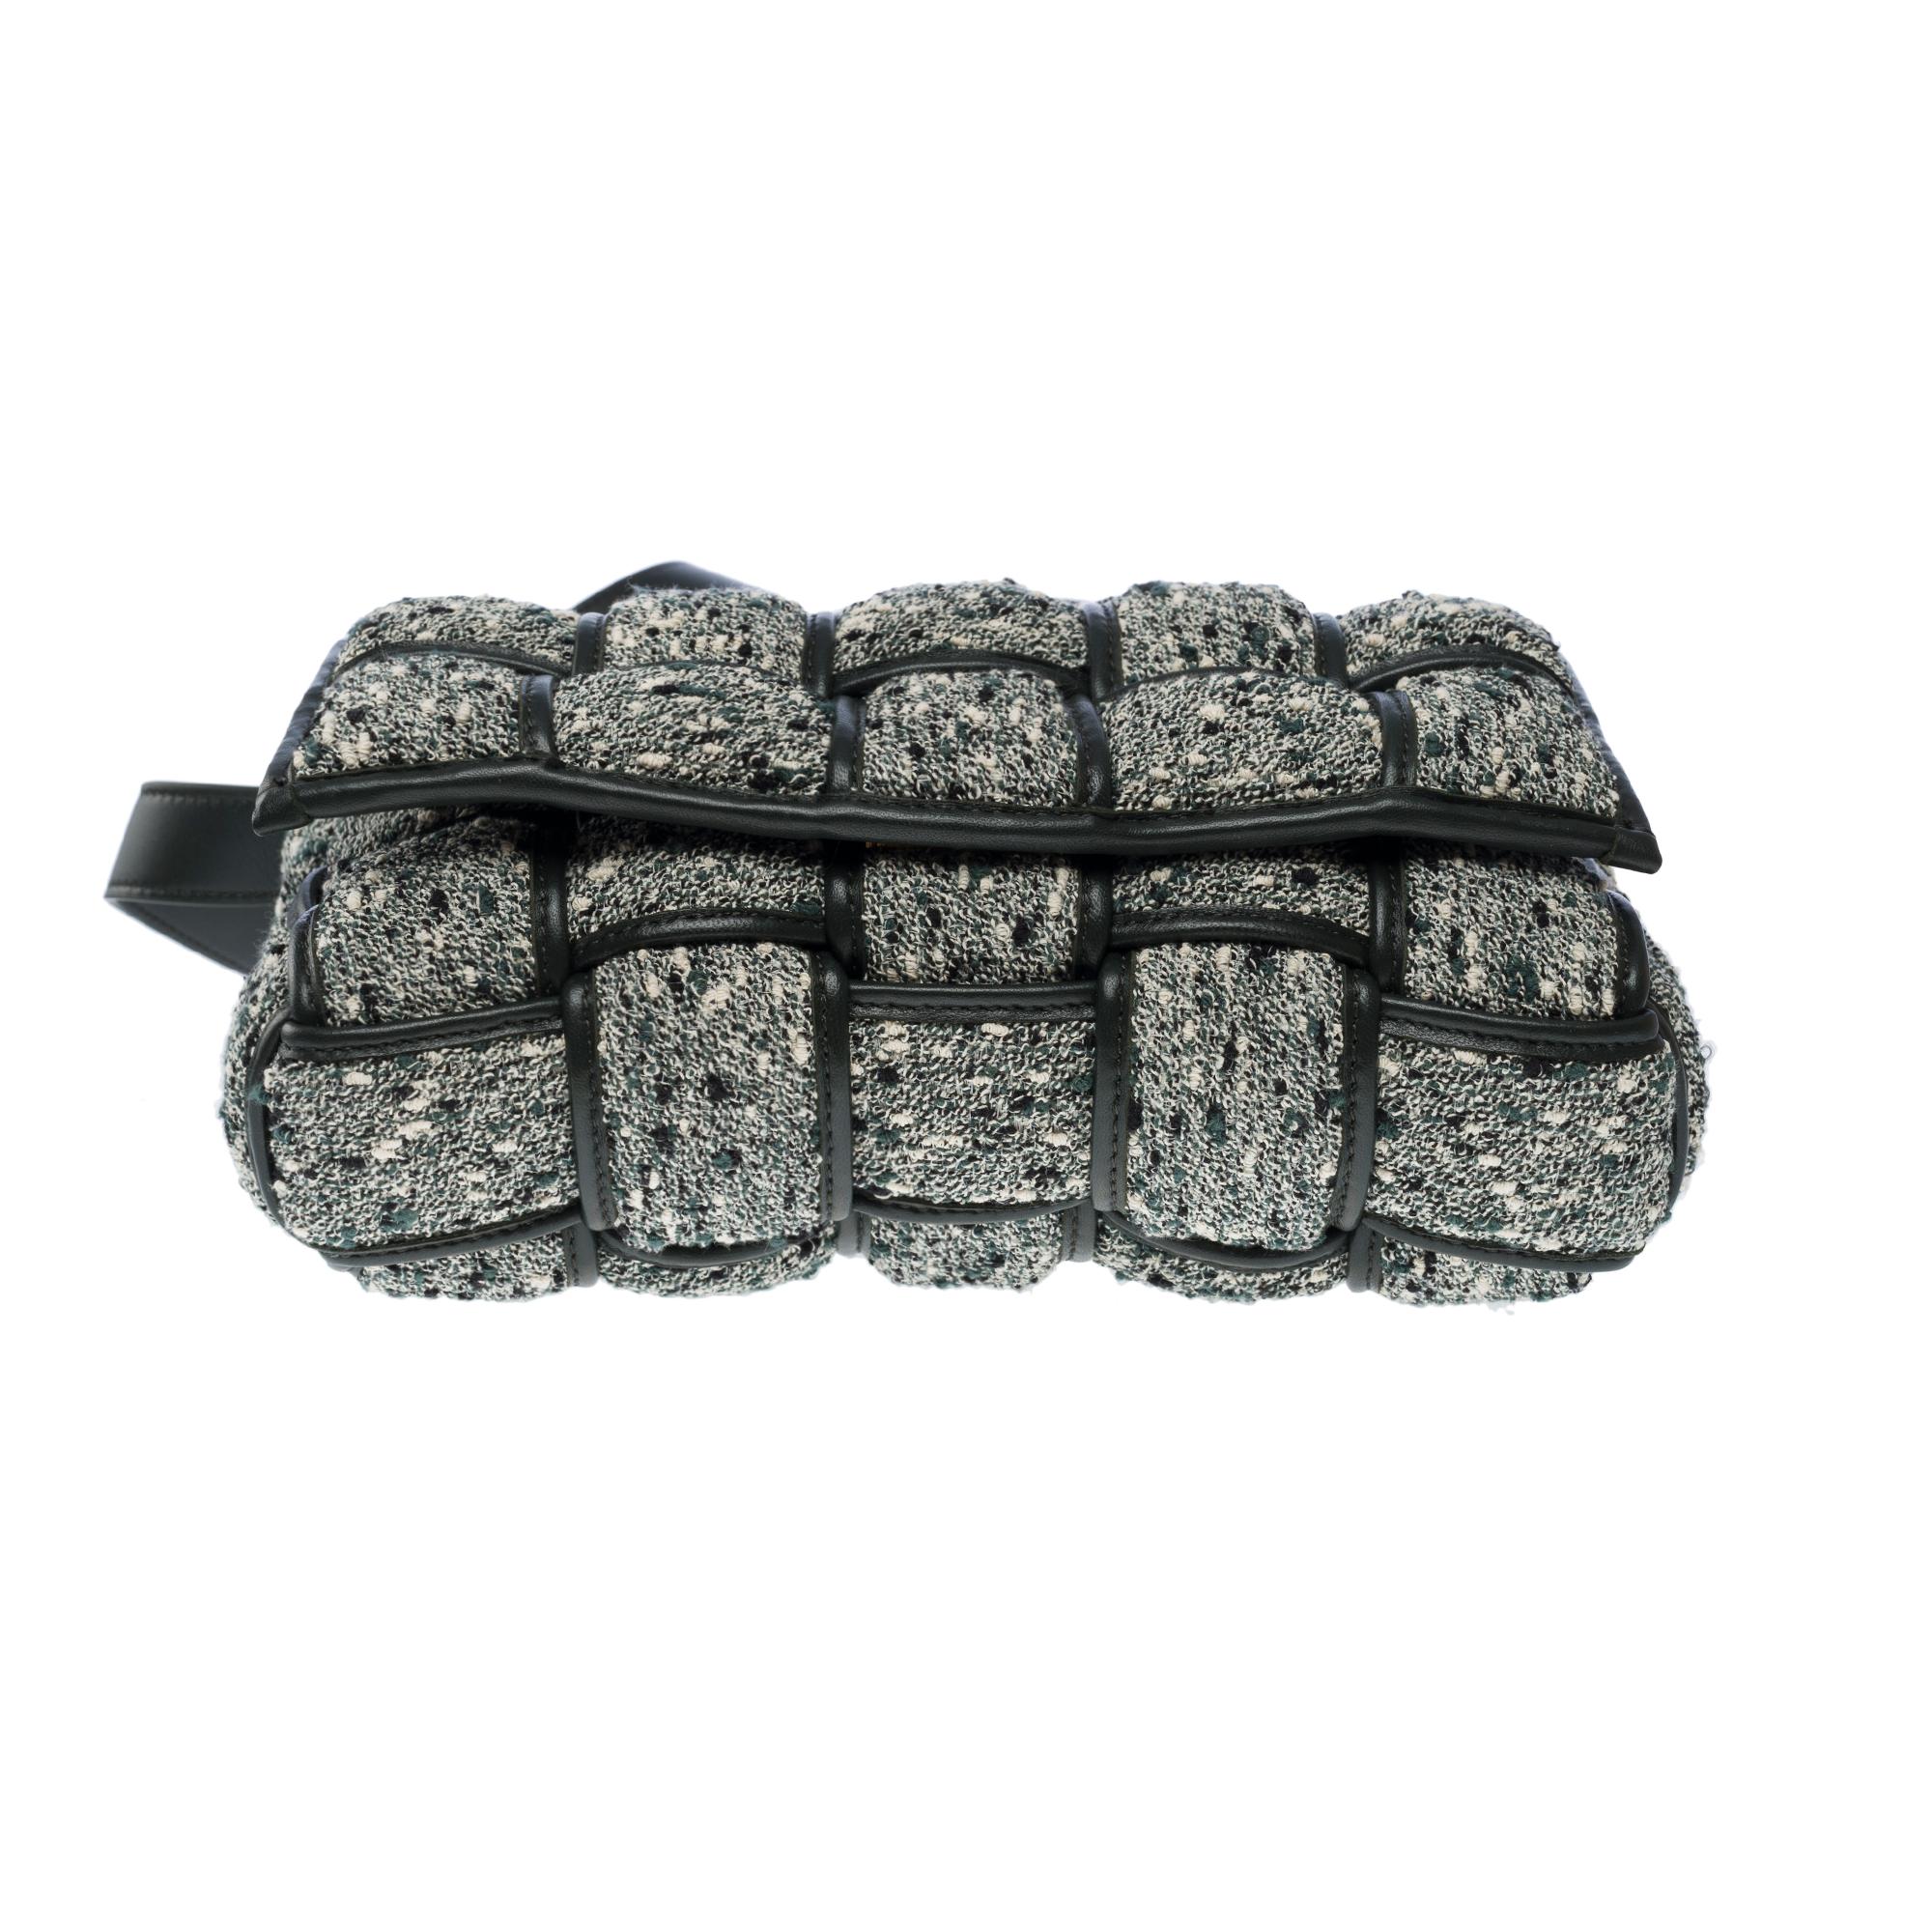 Bottega Veneta Cassette 25 shoulder bag in grey and green Tweed, GHW For Sale 6